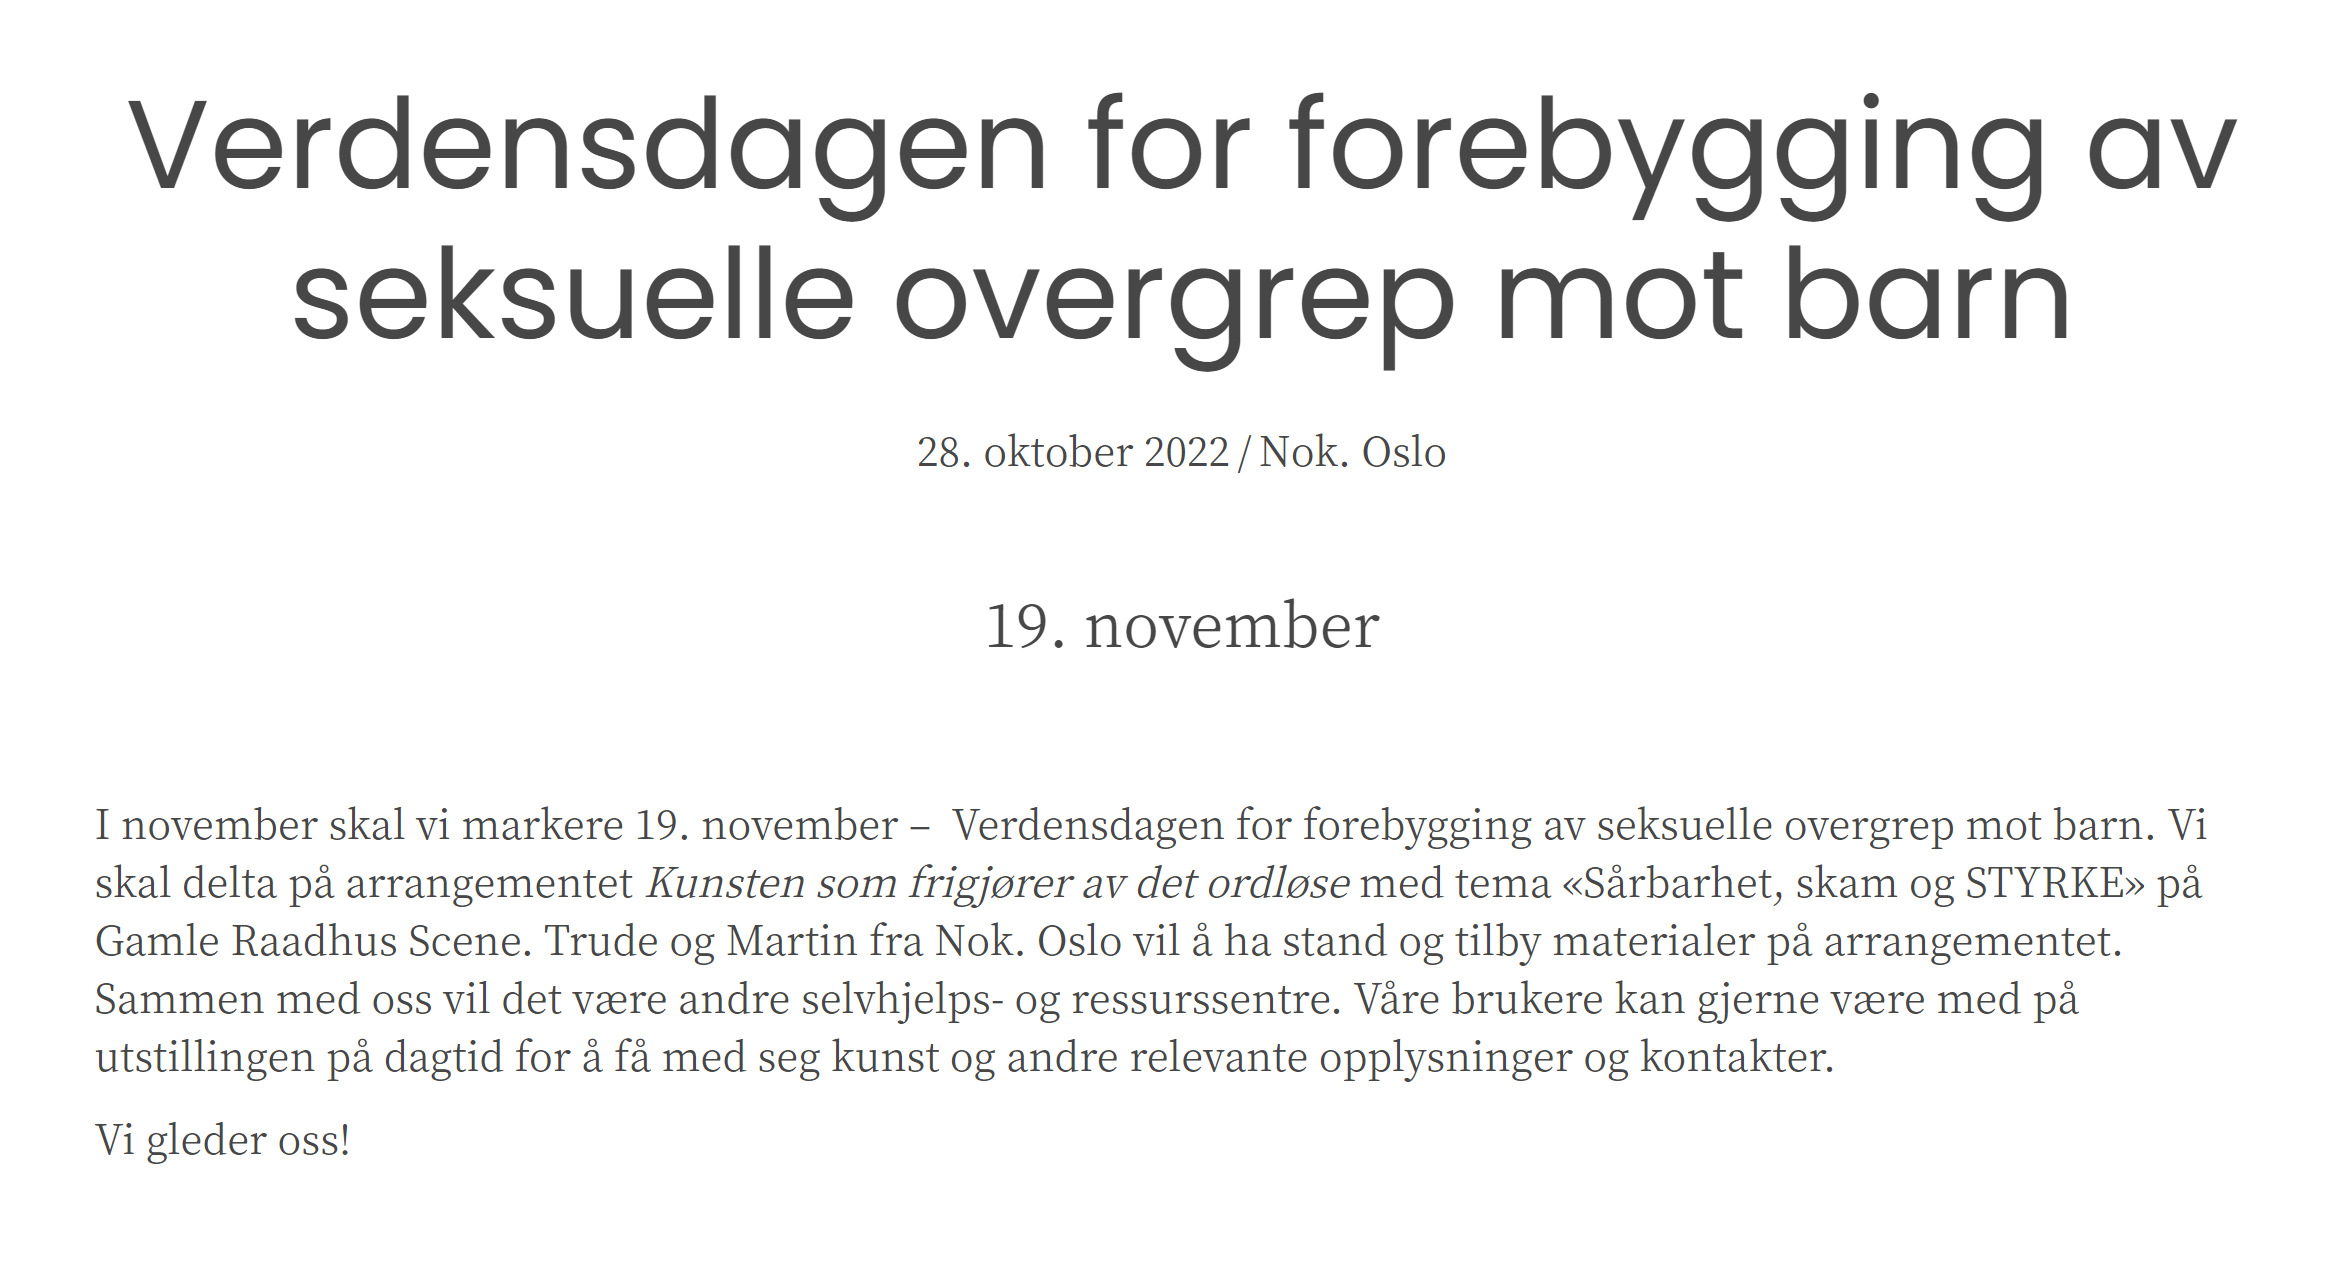 Nok.Oslo - nokoslo.no - Verdensdagen for forebygging av seksuelle overgrep mot barn 19. november